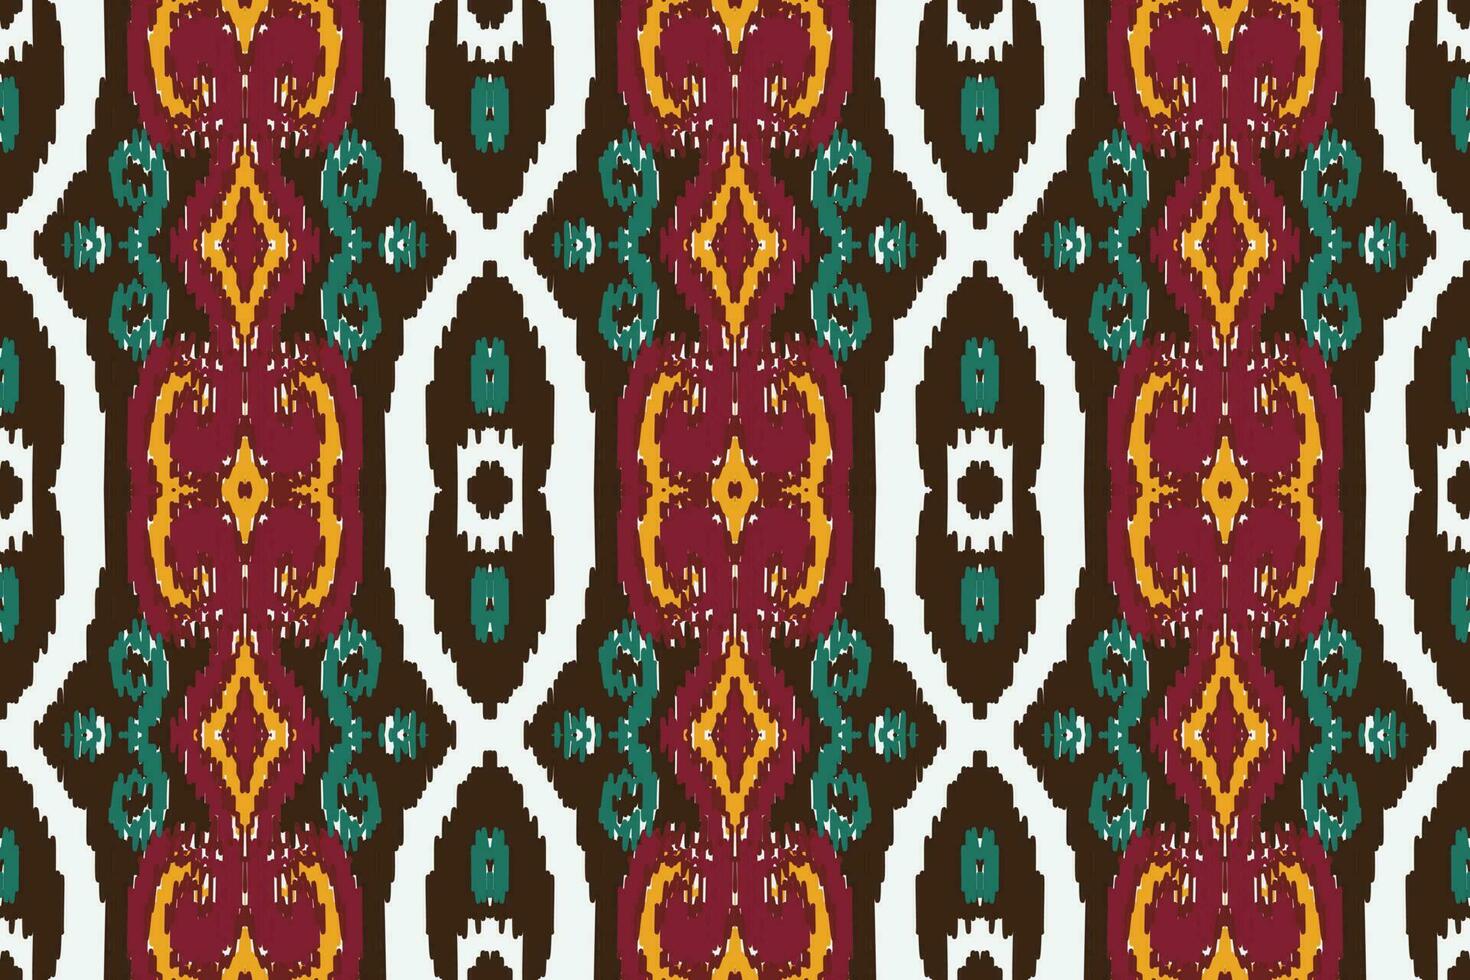 Afrikaanse ikat damast paisley borduurwerk achtergrond. meetkundig etnisch oosters patroon traditioneel. ikat aztec stijl abstract vector illustratie. ontwerp voor afdrukken textuur,stof,sari,sari,tapijt.